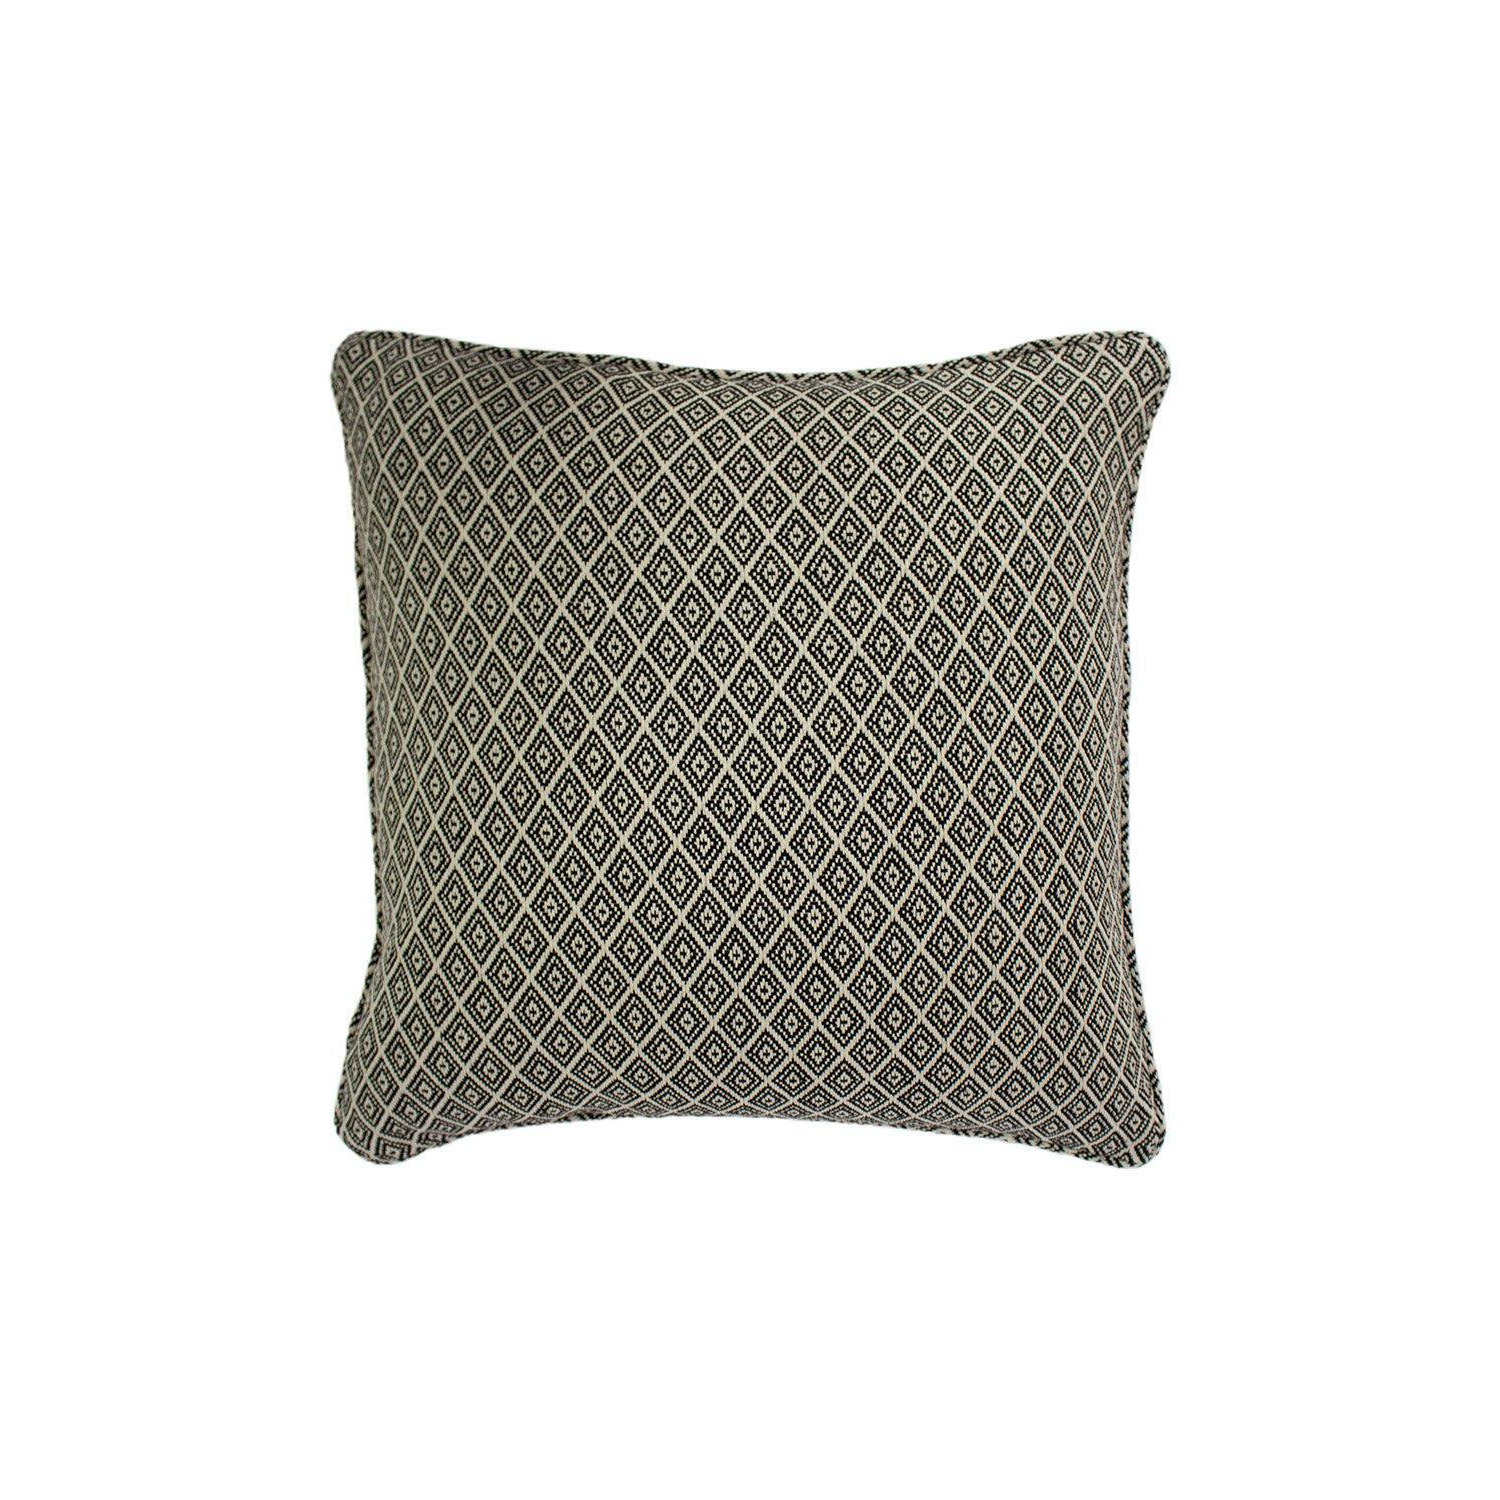 Tangier Woven Geometric Fringed Cushion - image 1